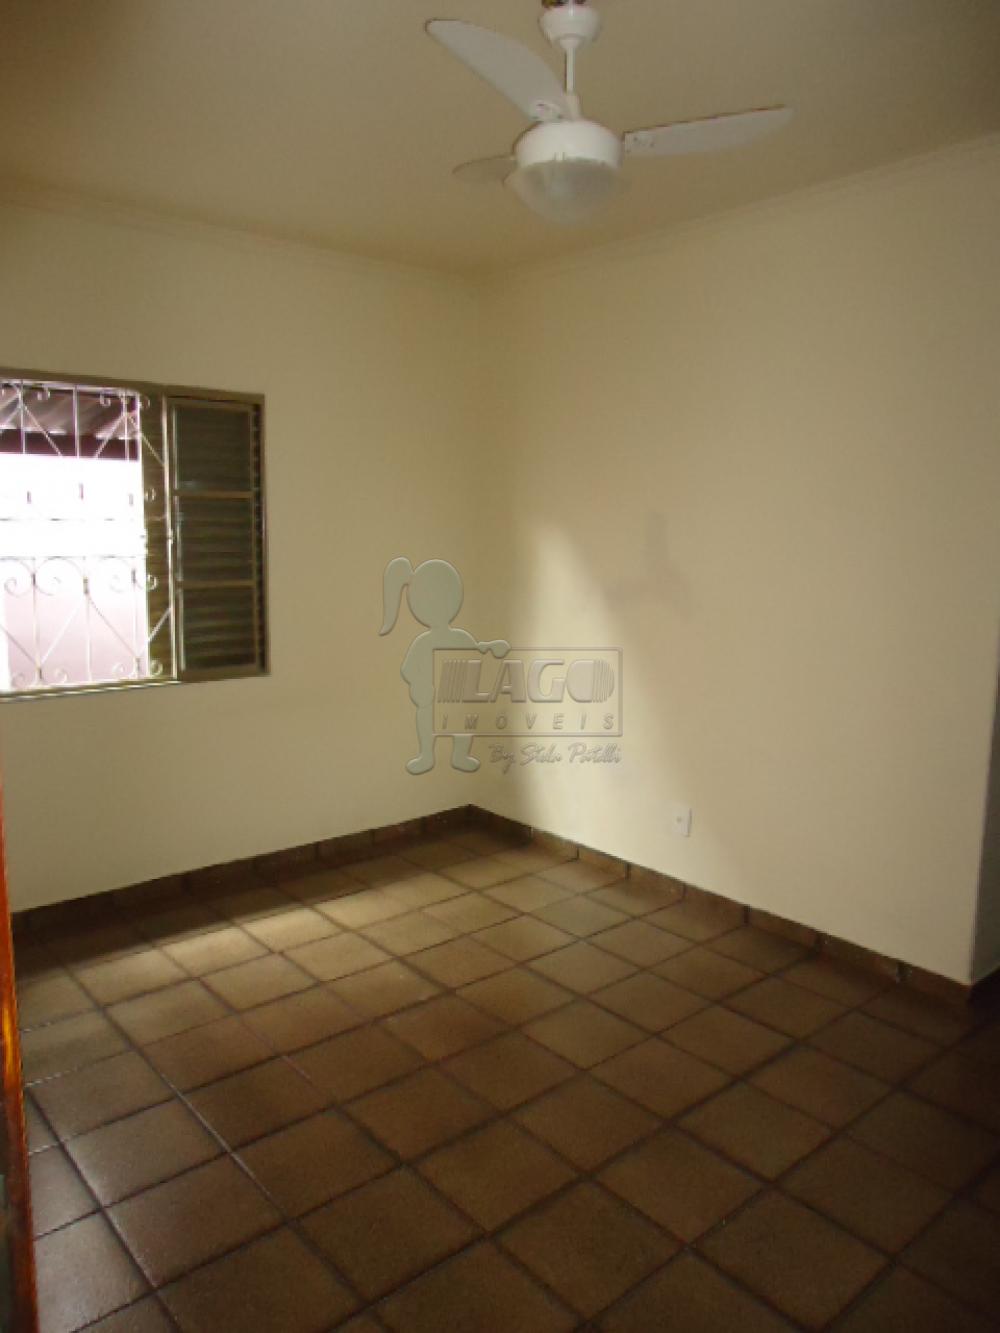 Alugar Casa / Padrão em Ribeirão Preto R$ 950,00 - Foto 6